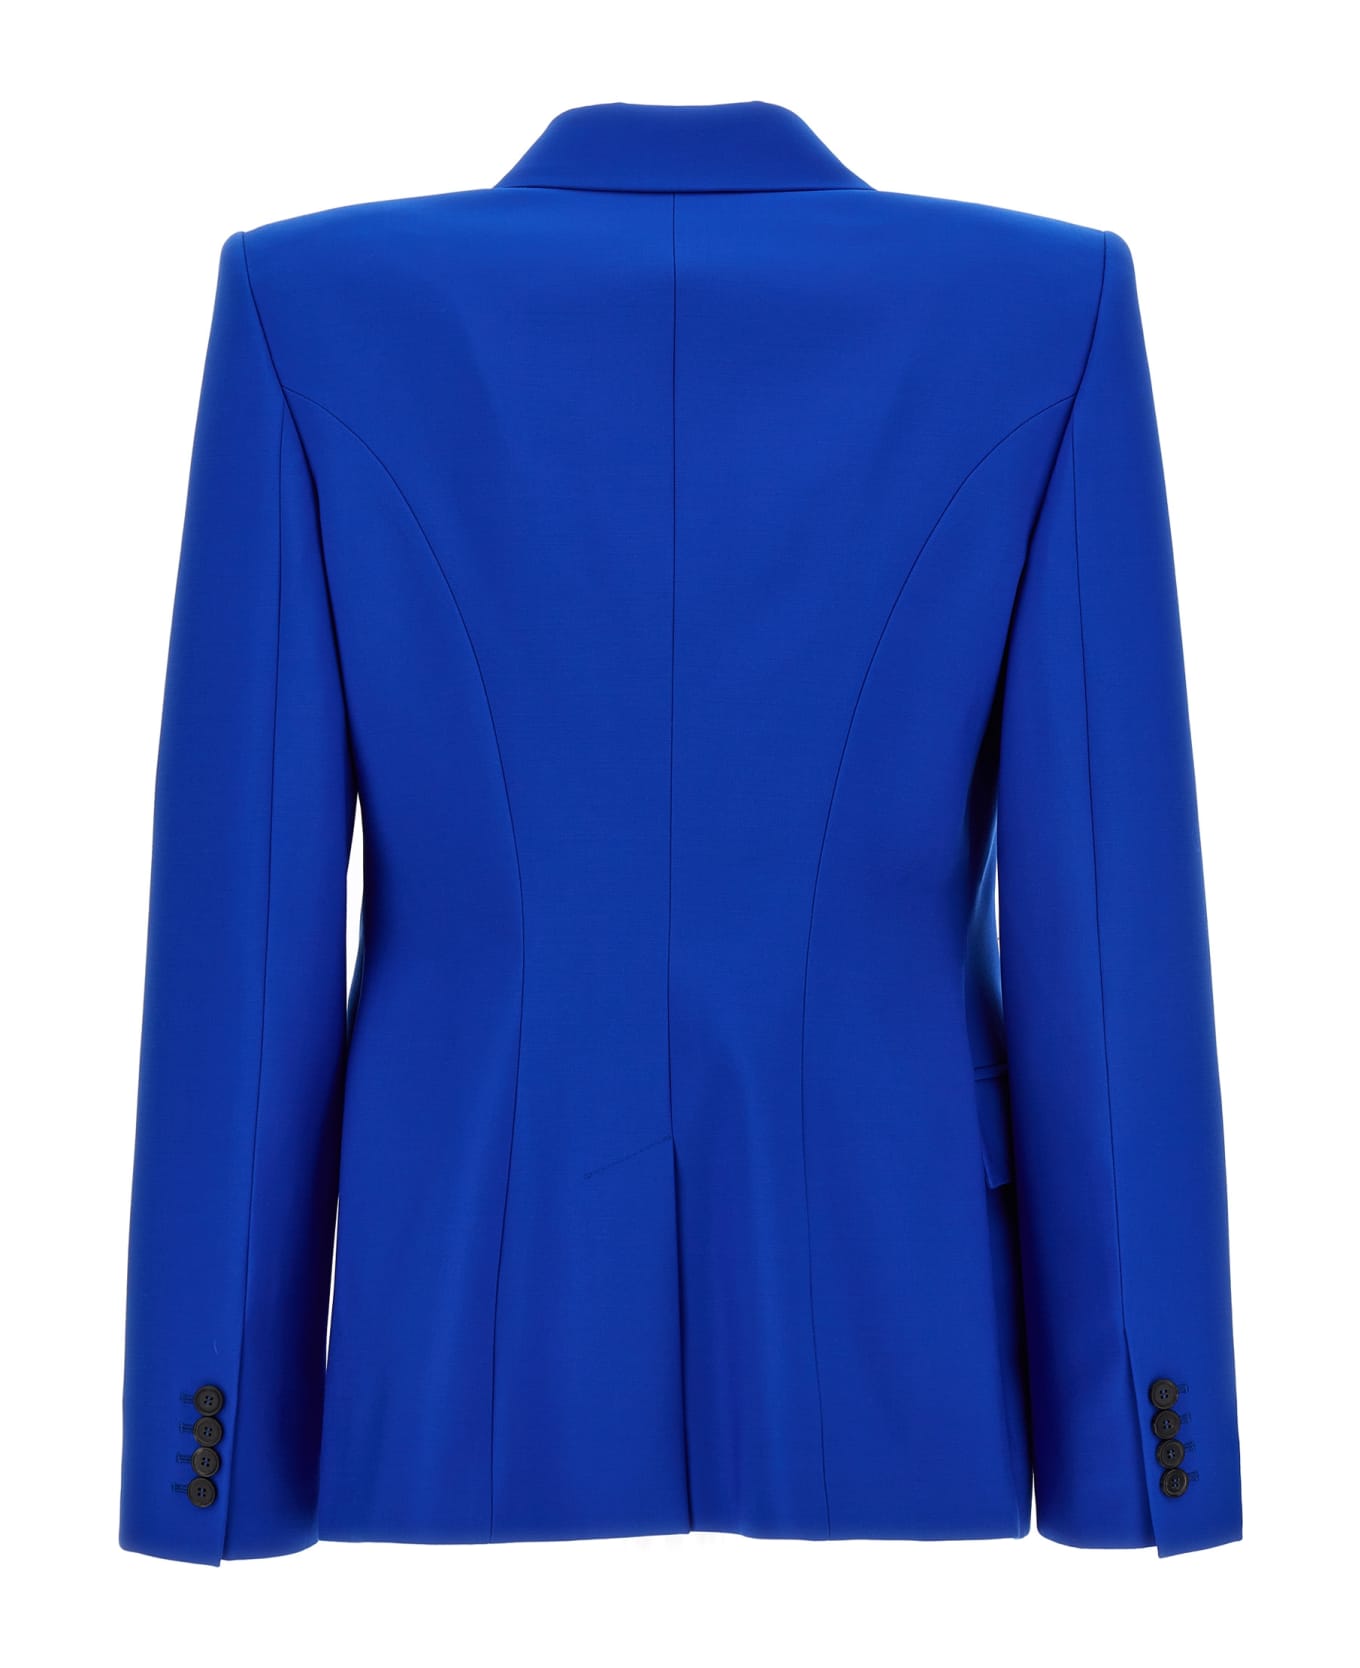 Alexander McQueen Double Breast Wool Blazer Jacket - Blue ブレザー